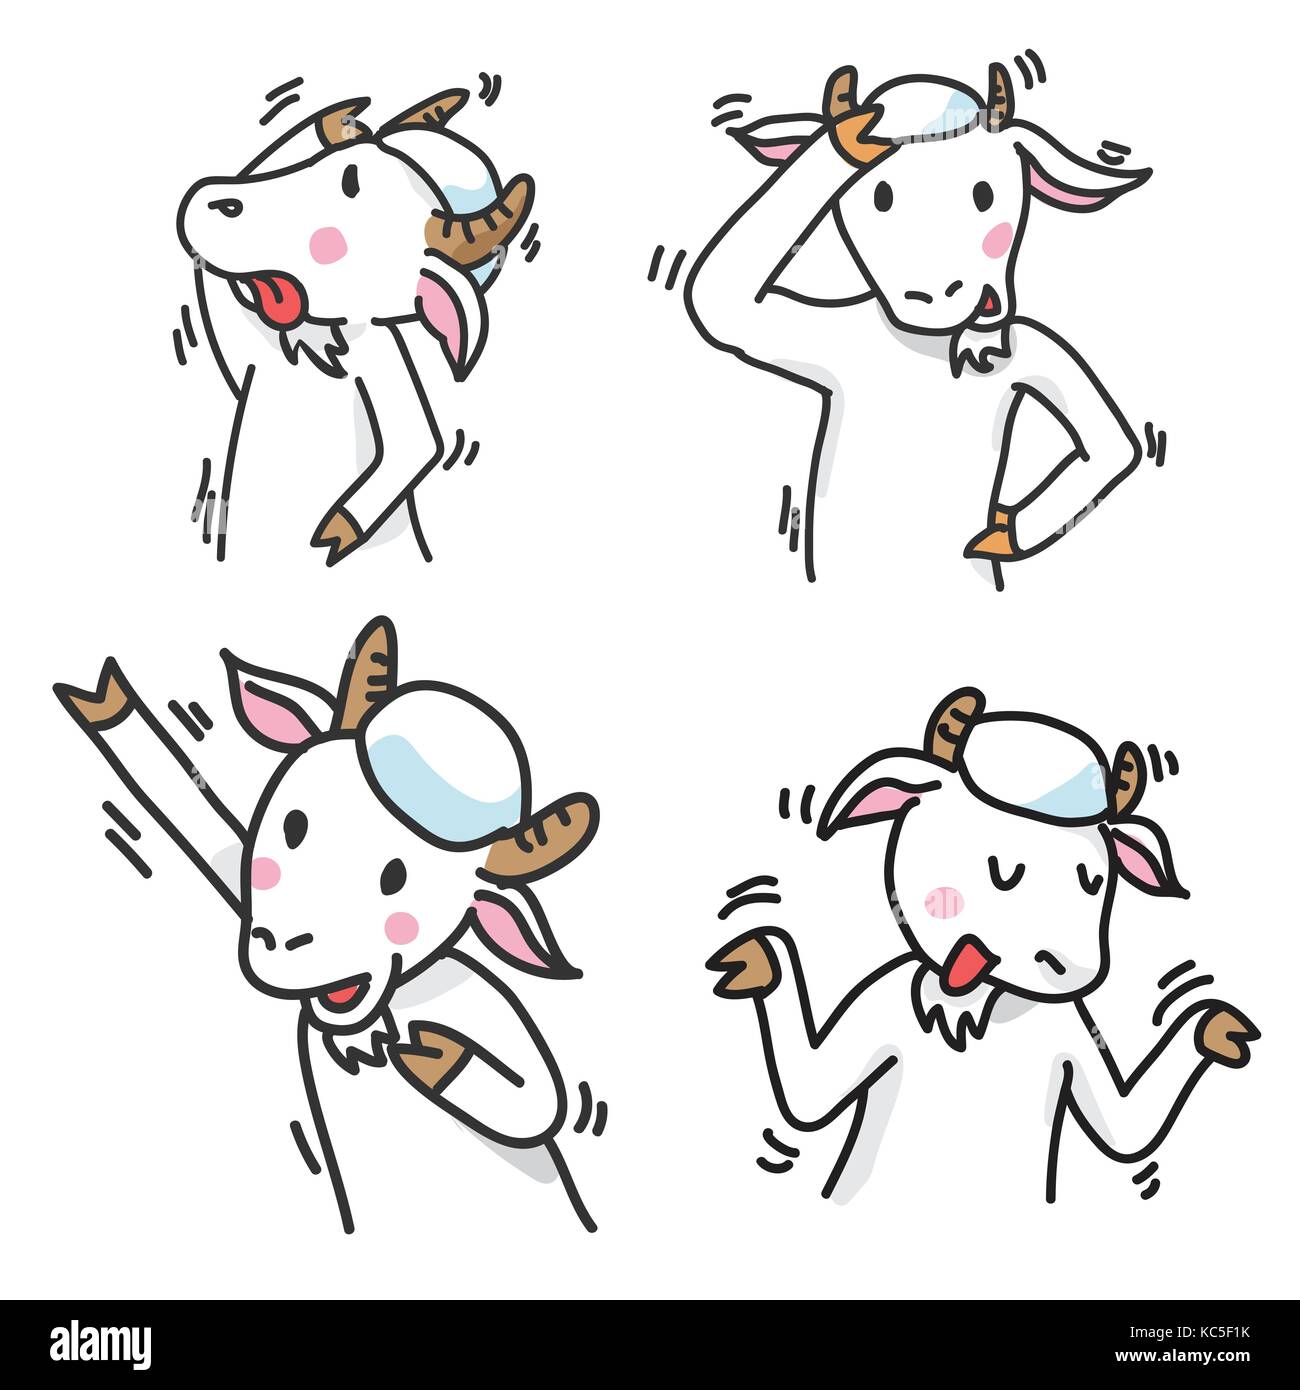 Satz von Ziege Zeichentrickfigur, Hände hoch, verwirrt, glücklich-Vector Illustration Stock Vektor